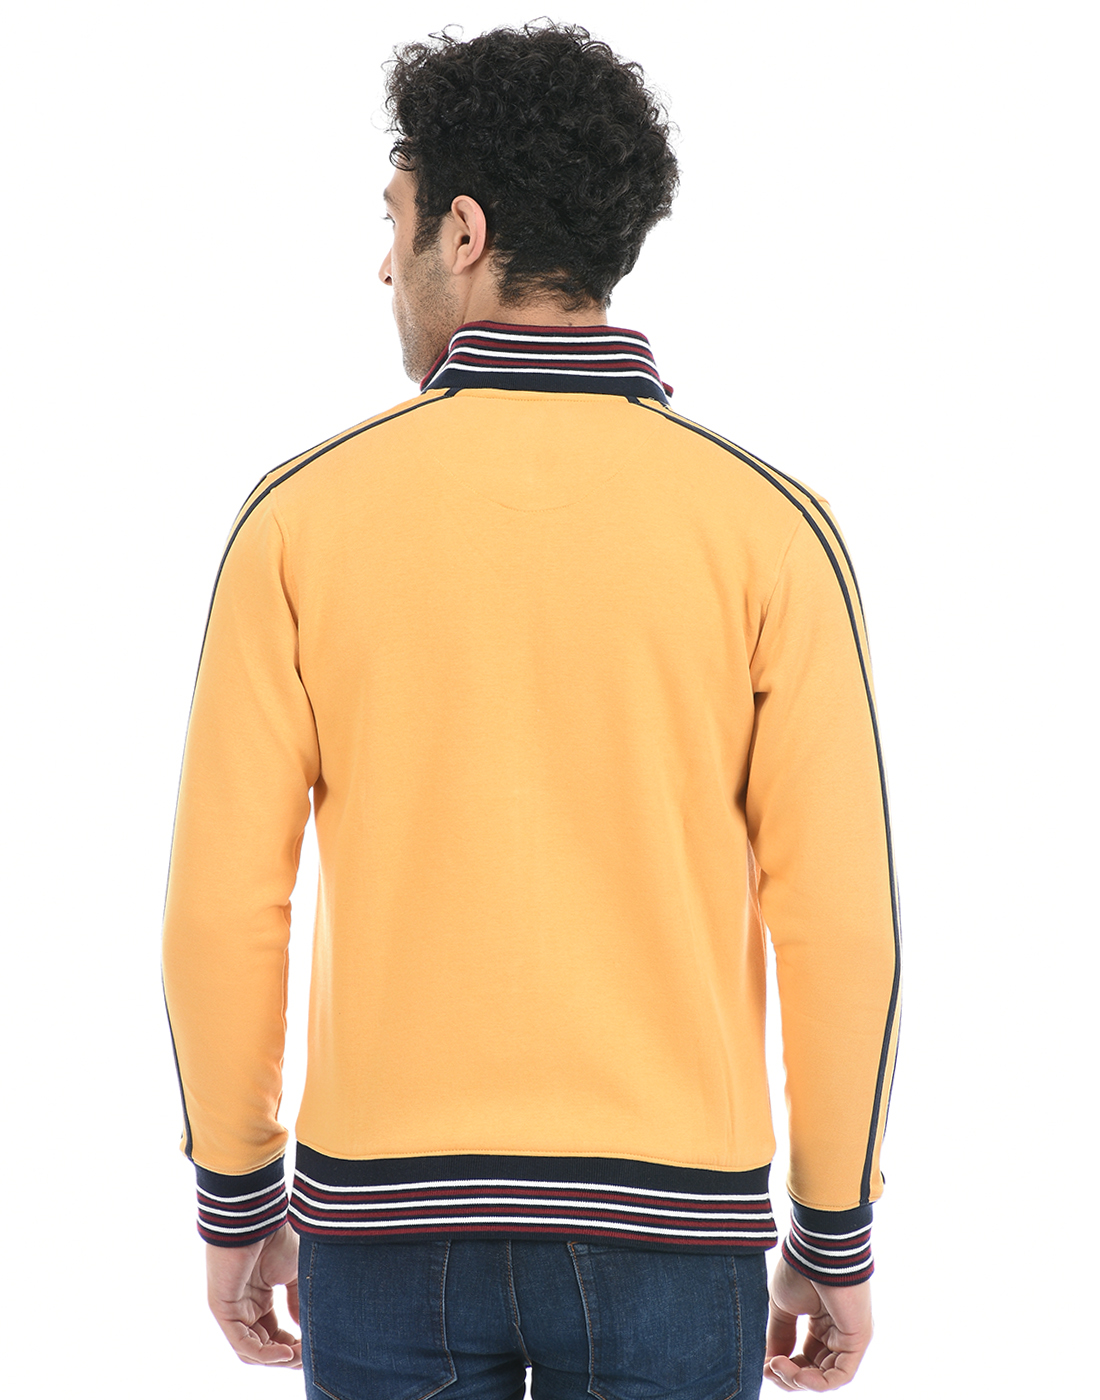 Cloak & Decker by Monte Carlo Men Striped Yellow Sweatshirt